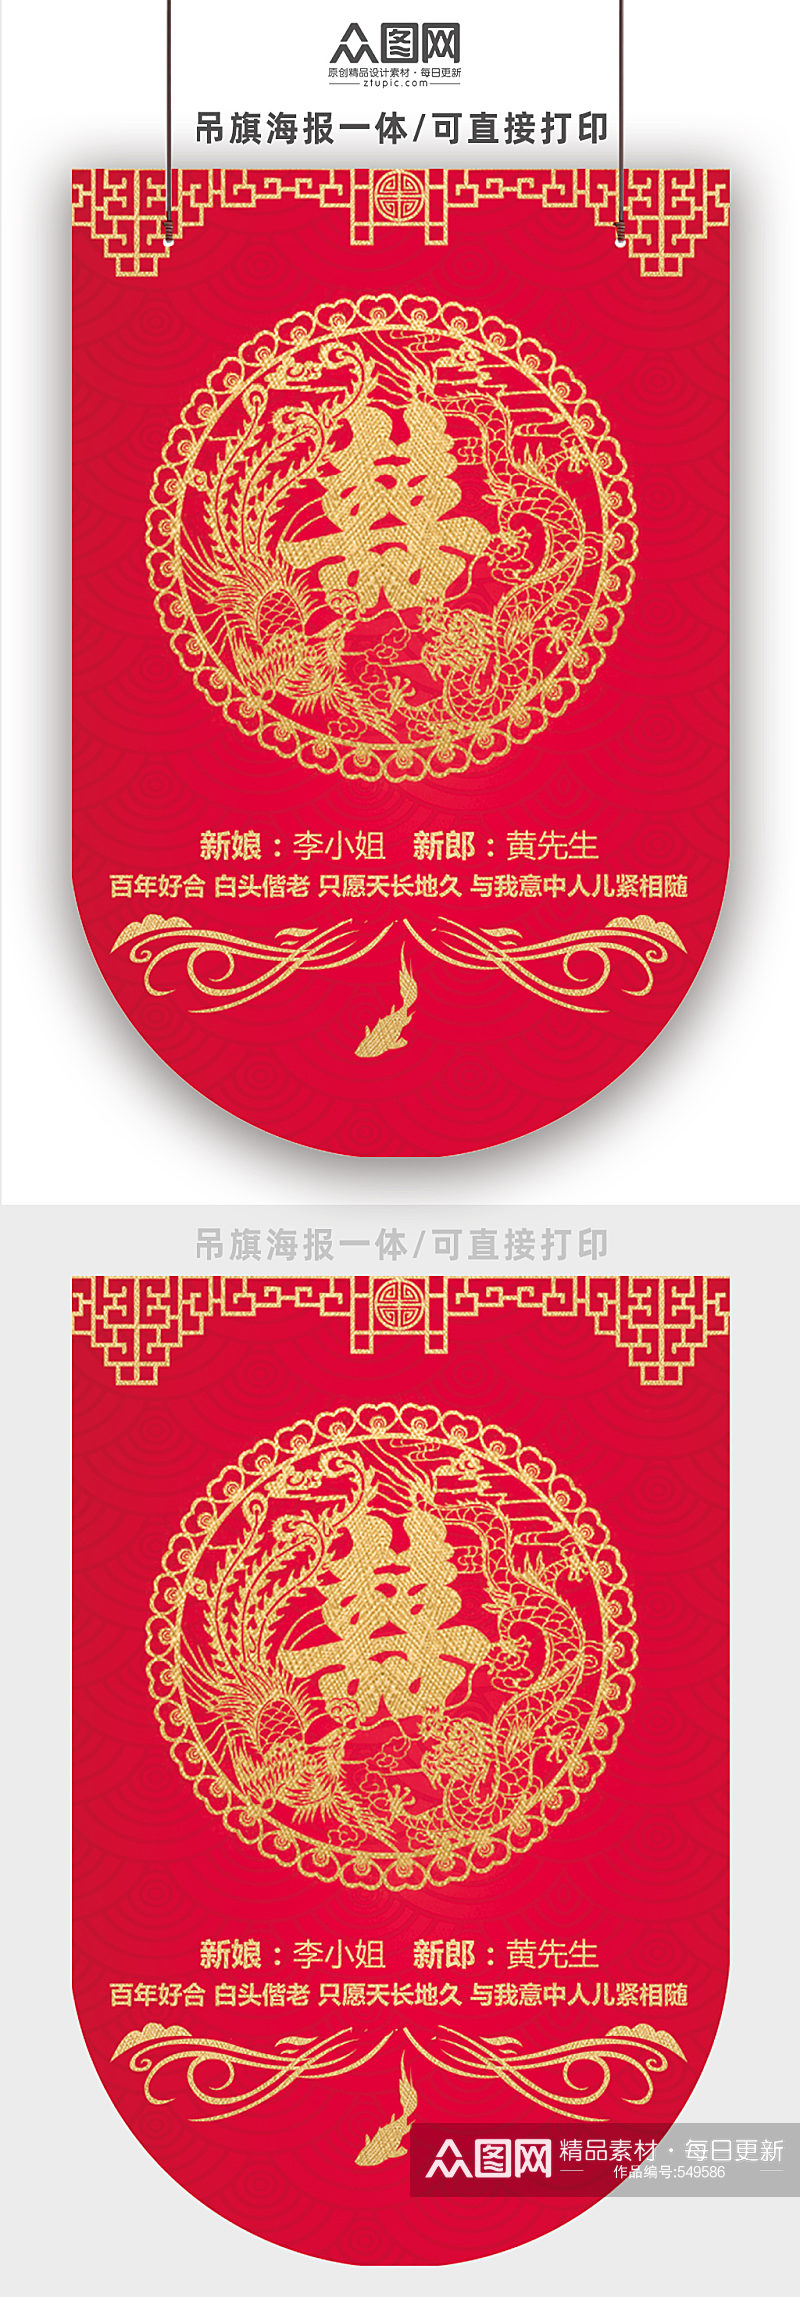 中式龙凤花纹婚宴吊旗素材